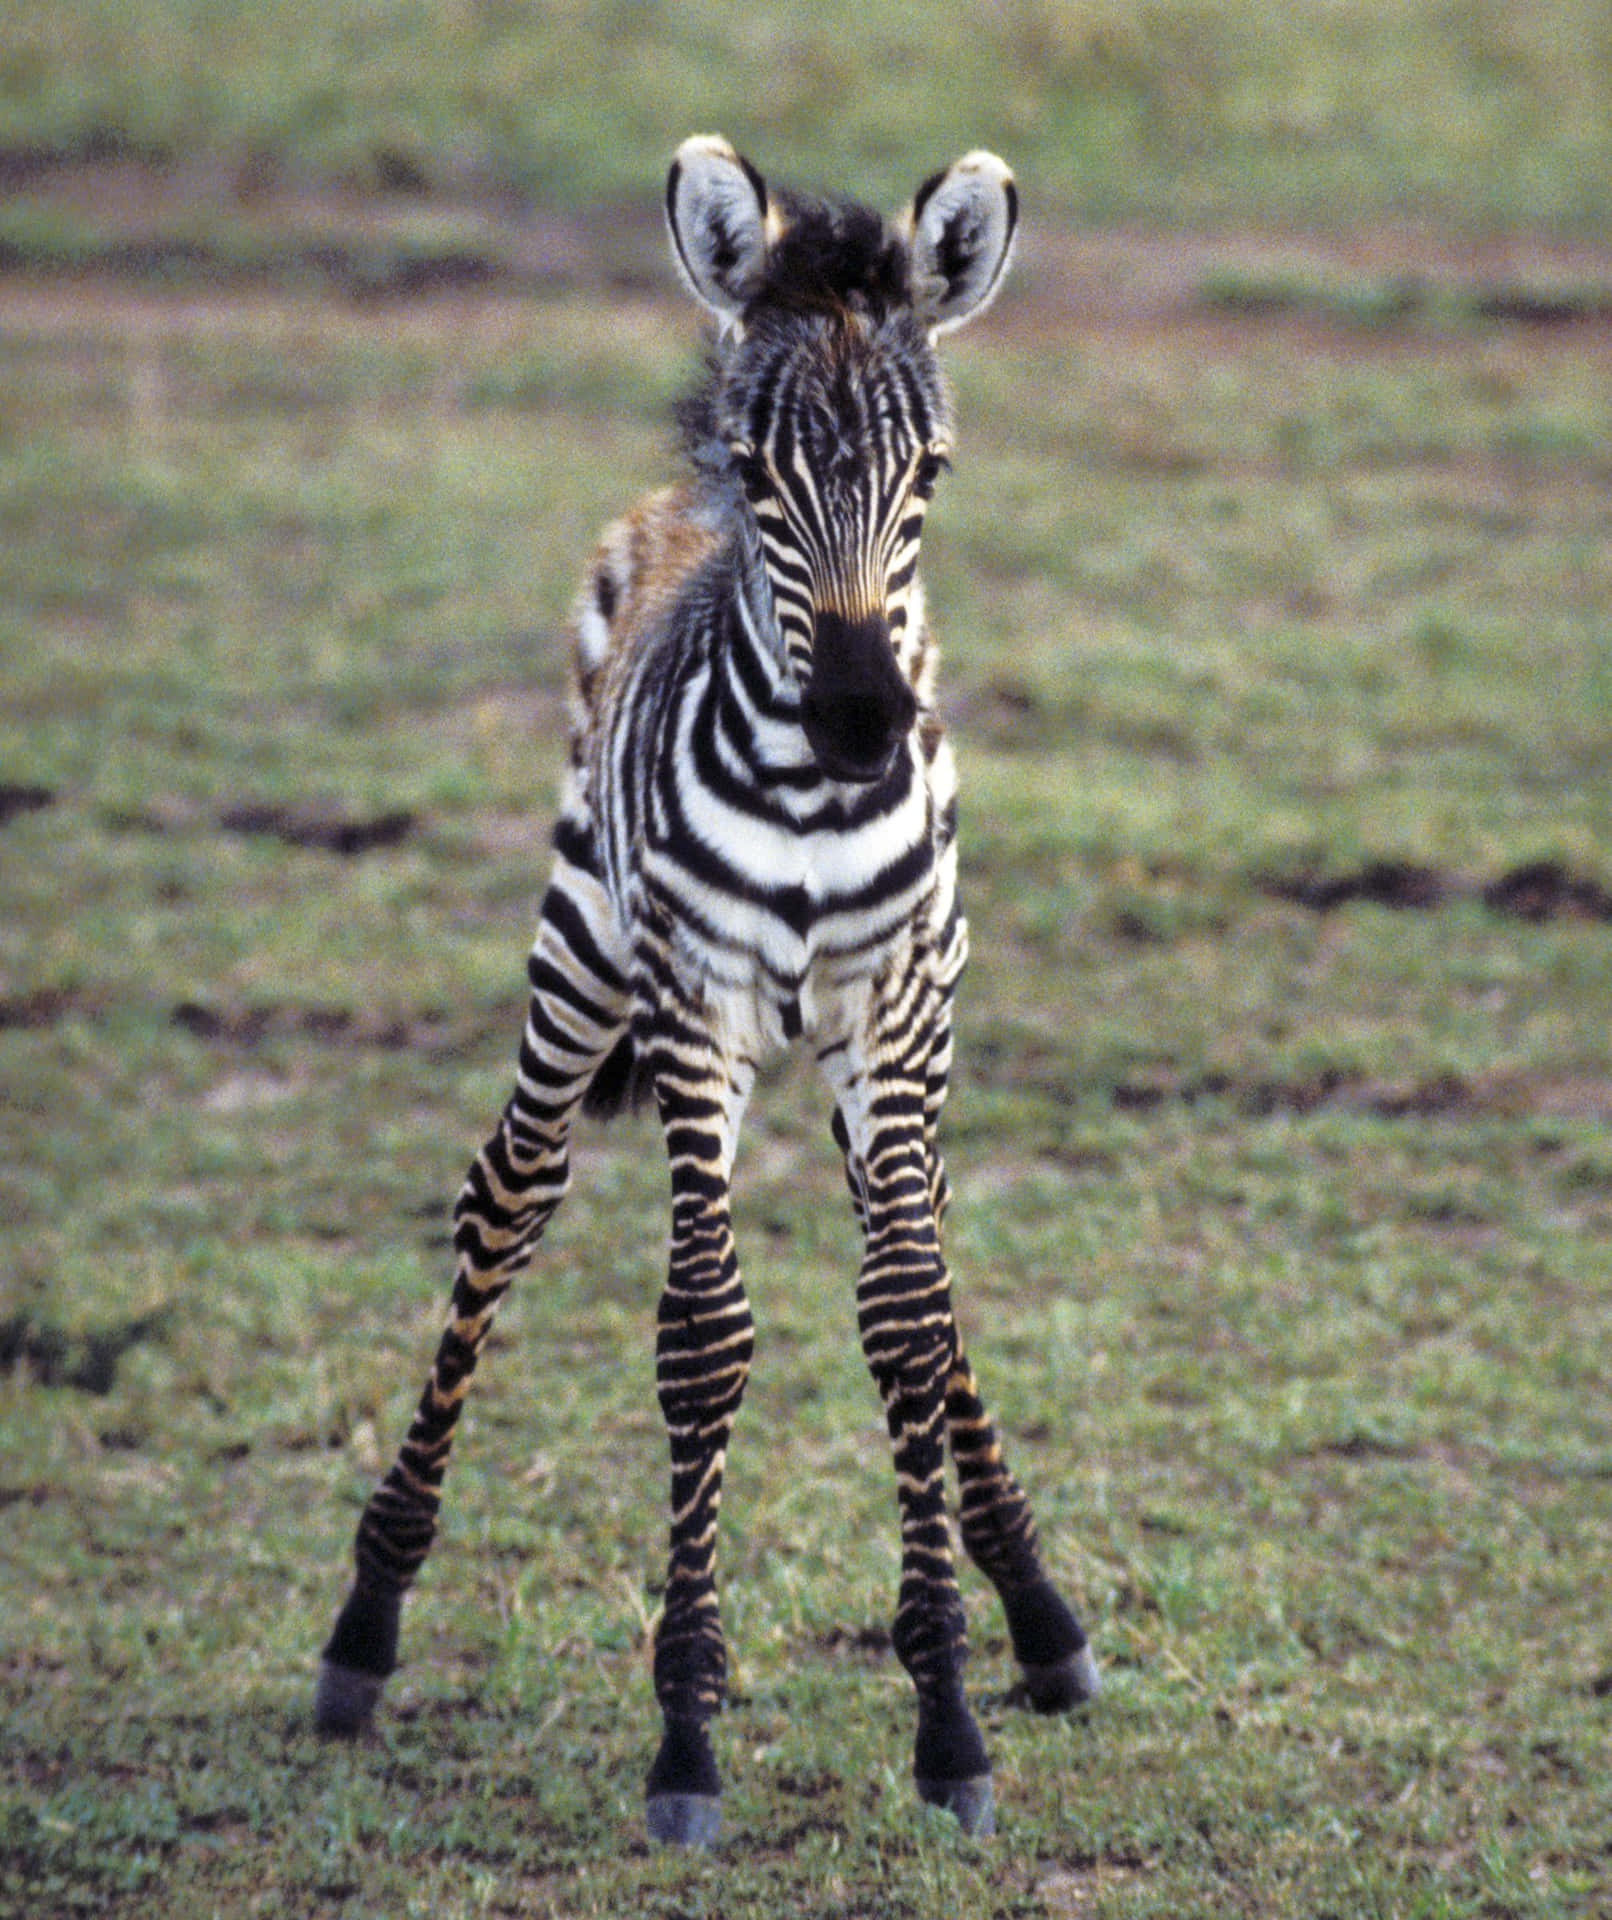 Taen Titt På Denna Vackra Zebra Fångad I Naturen.